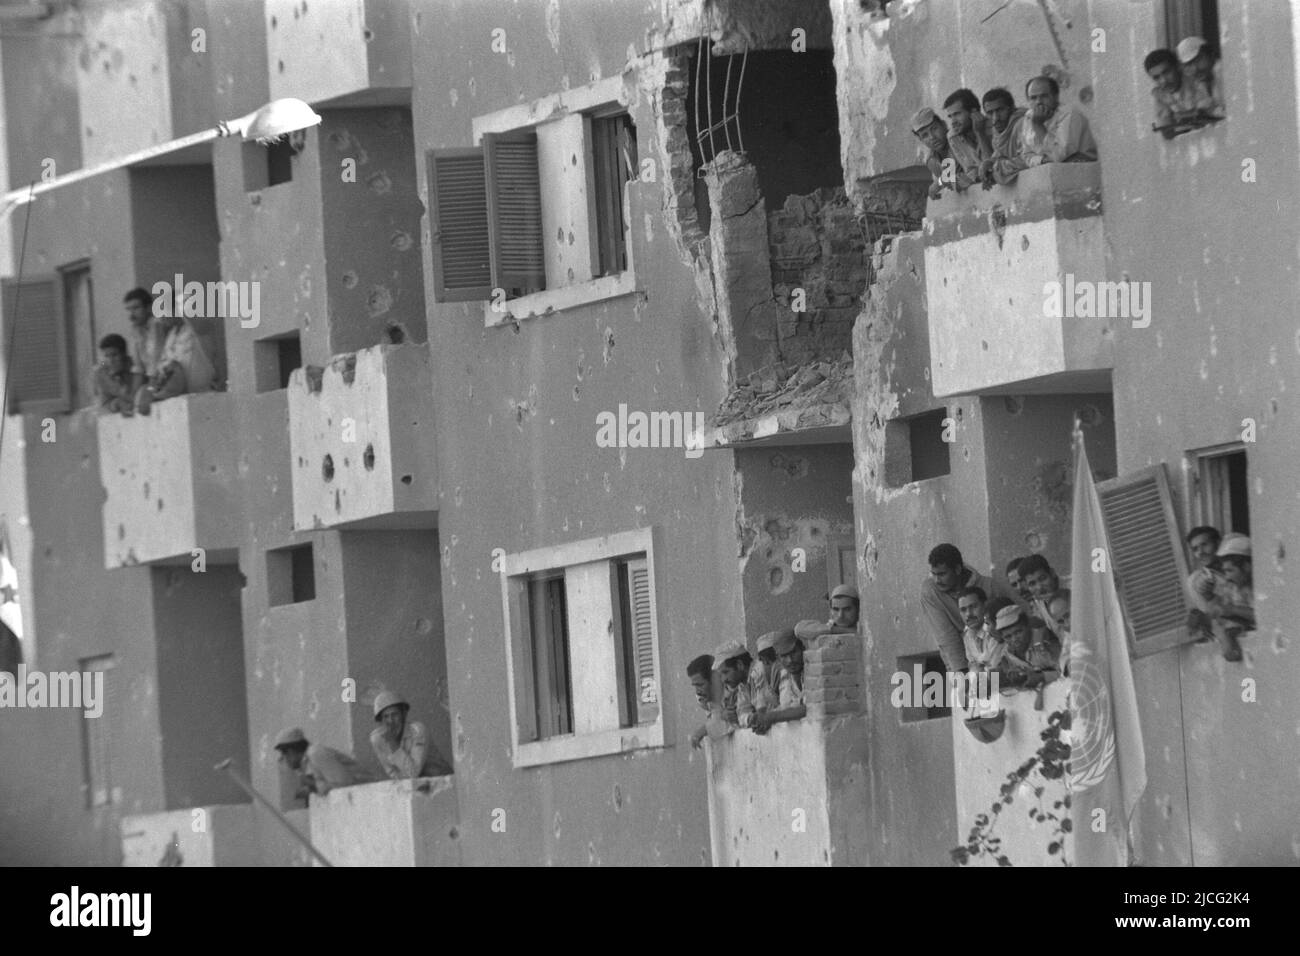 Soldati egiziani che guardano fuori delle finestre, edifici alla periferia di Suez, buchi proiettili possono essere visti nel muro della casa, durante la guerra di Yom Kippur, la guerra di Yom Kippur tra Israele e gli stati arabi di Egitto, La Giordania e la Siria sono durate dal 6 aprile al 25 ottobre 1973, Foto Stock